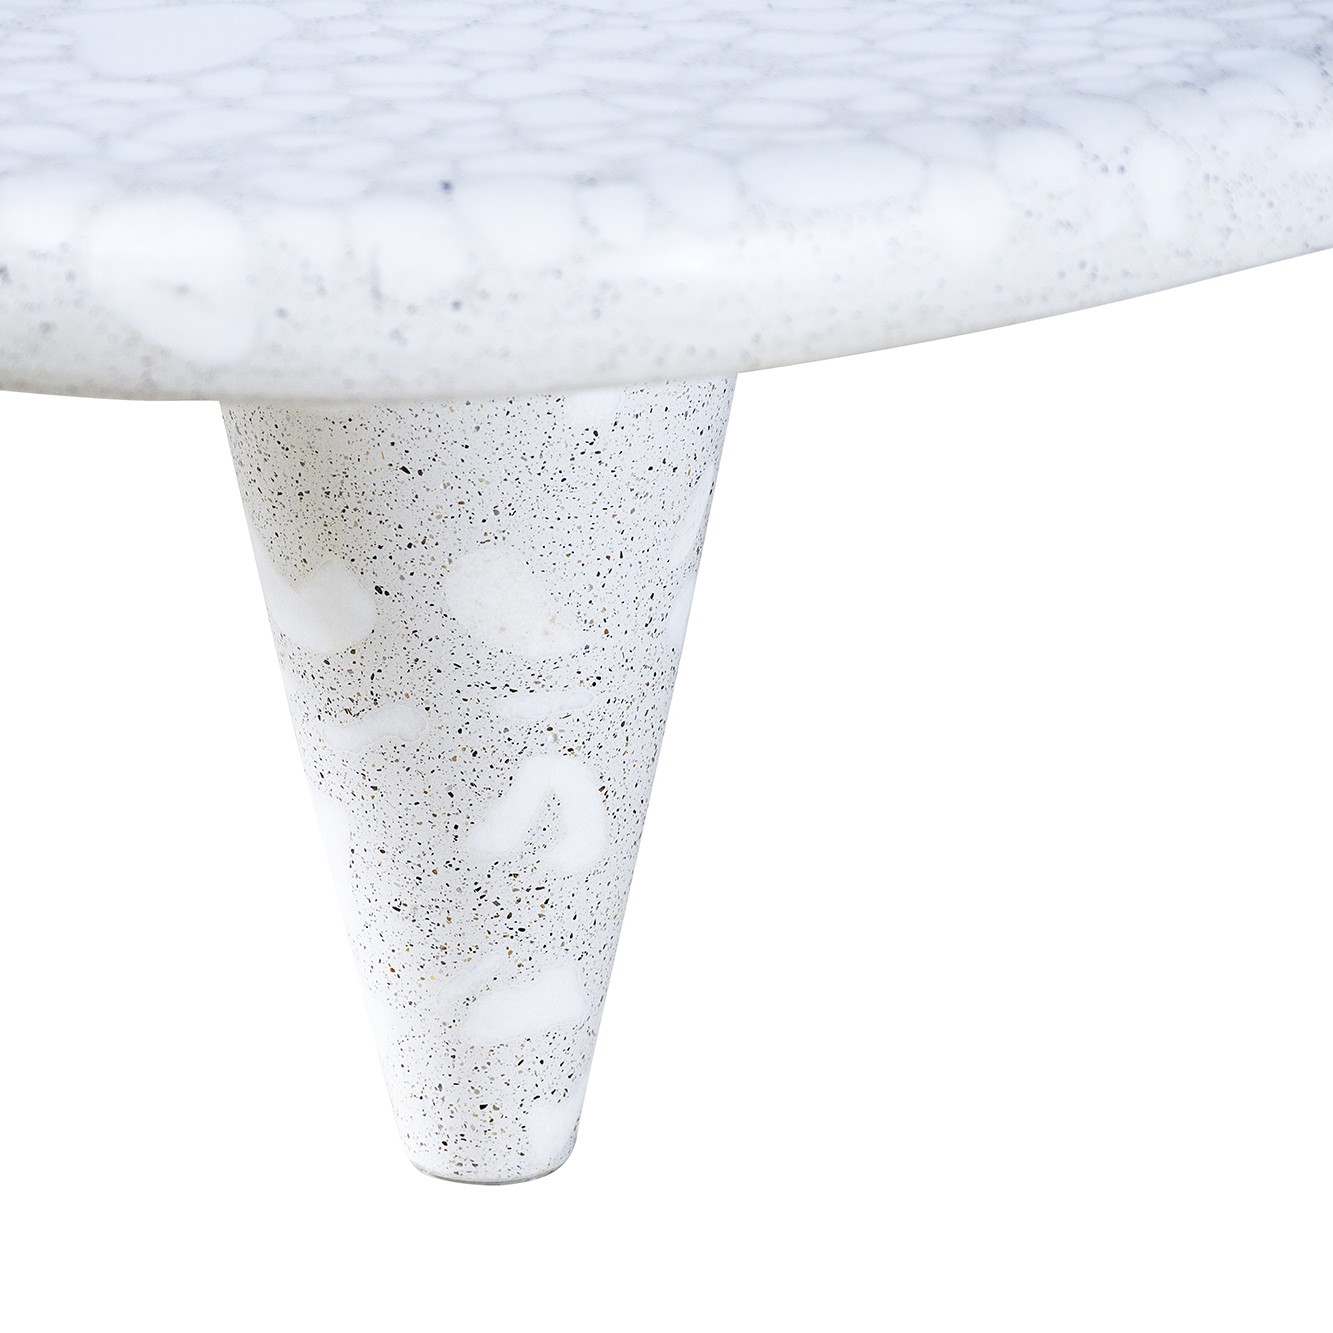 Tria concrete coffee table by urbi et orbi detail